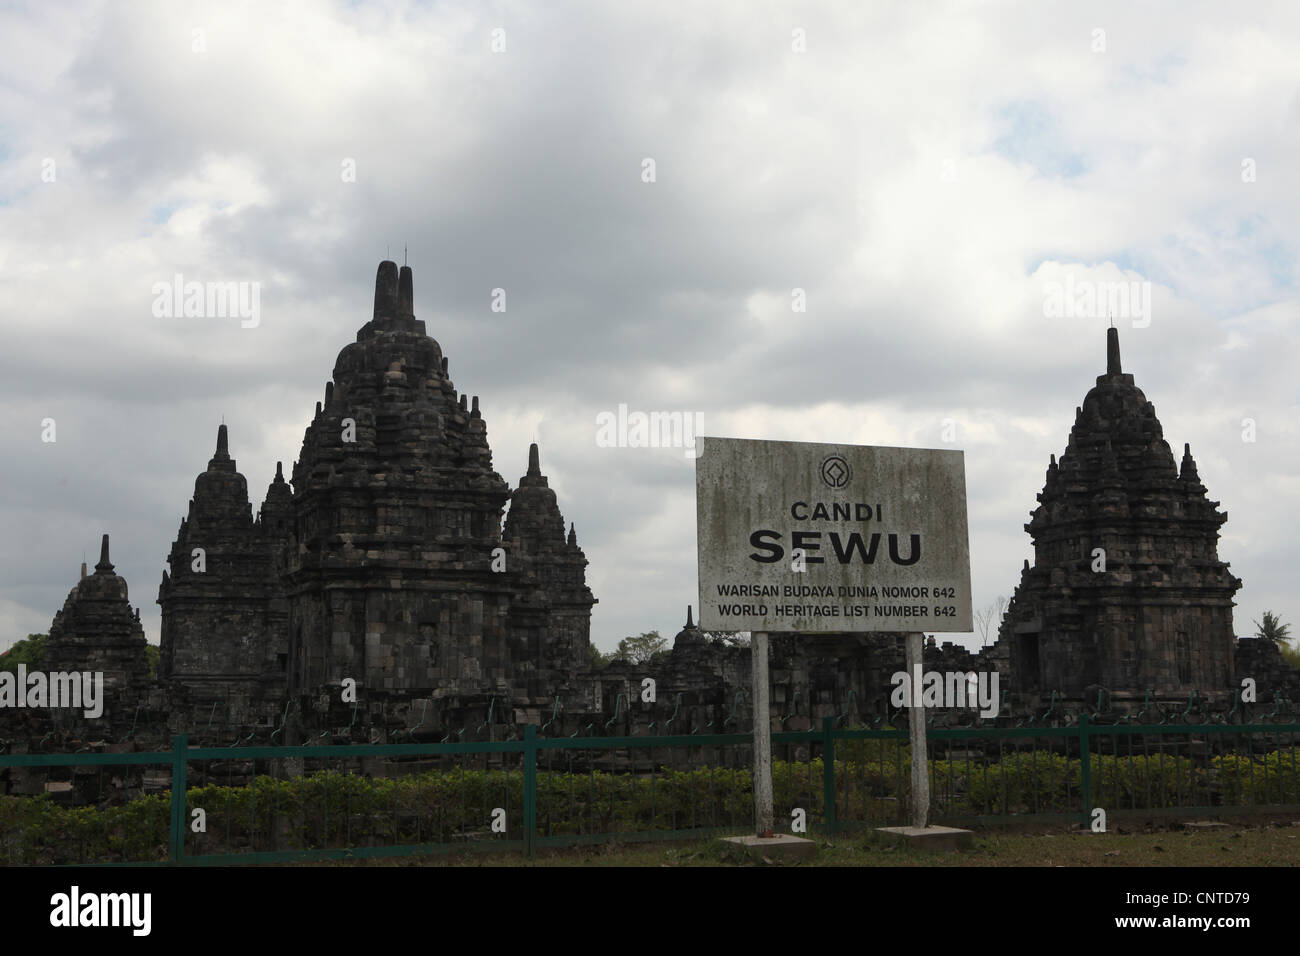 Candi Sewu Buddhist Temple next to Prambanan Temple near Yogyakarta, Central Java, Indonesia. Stock Photo